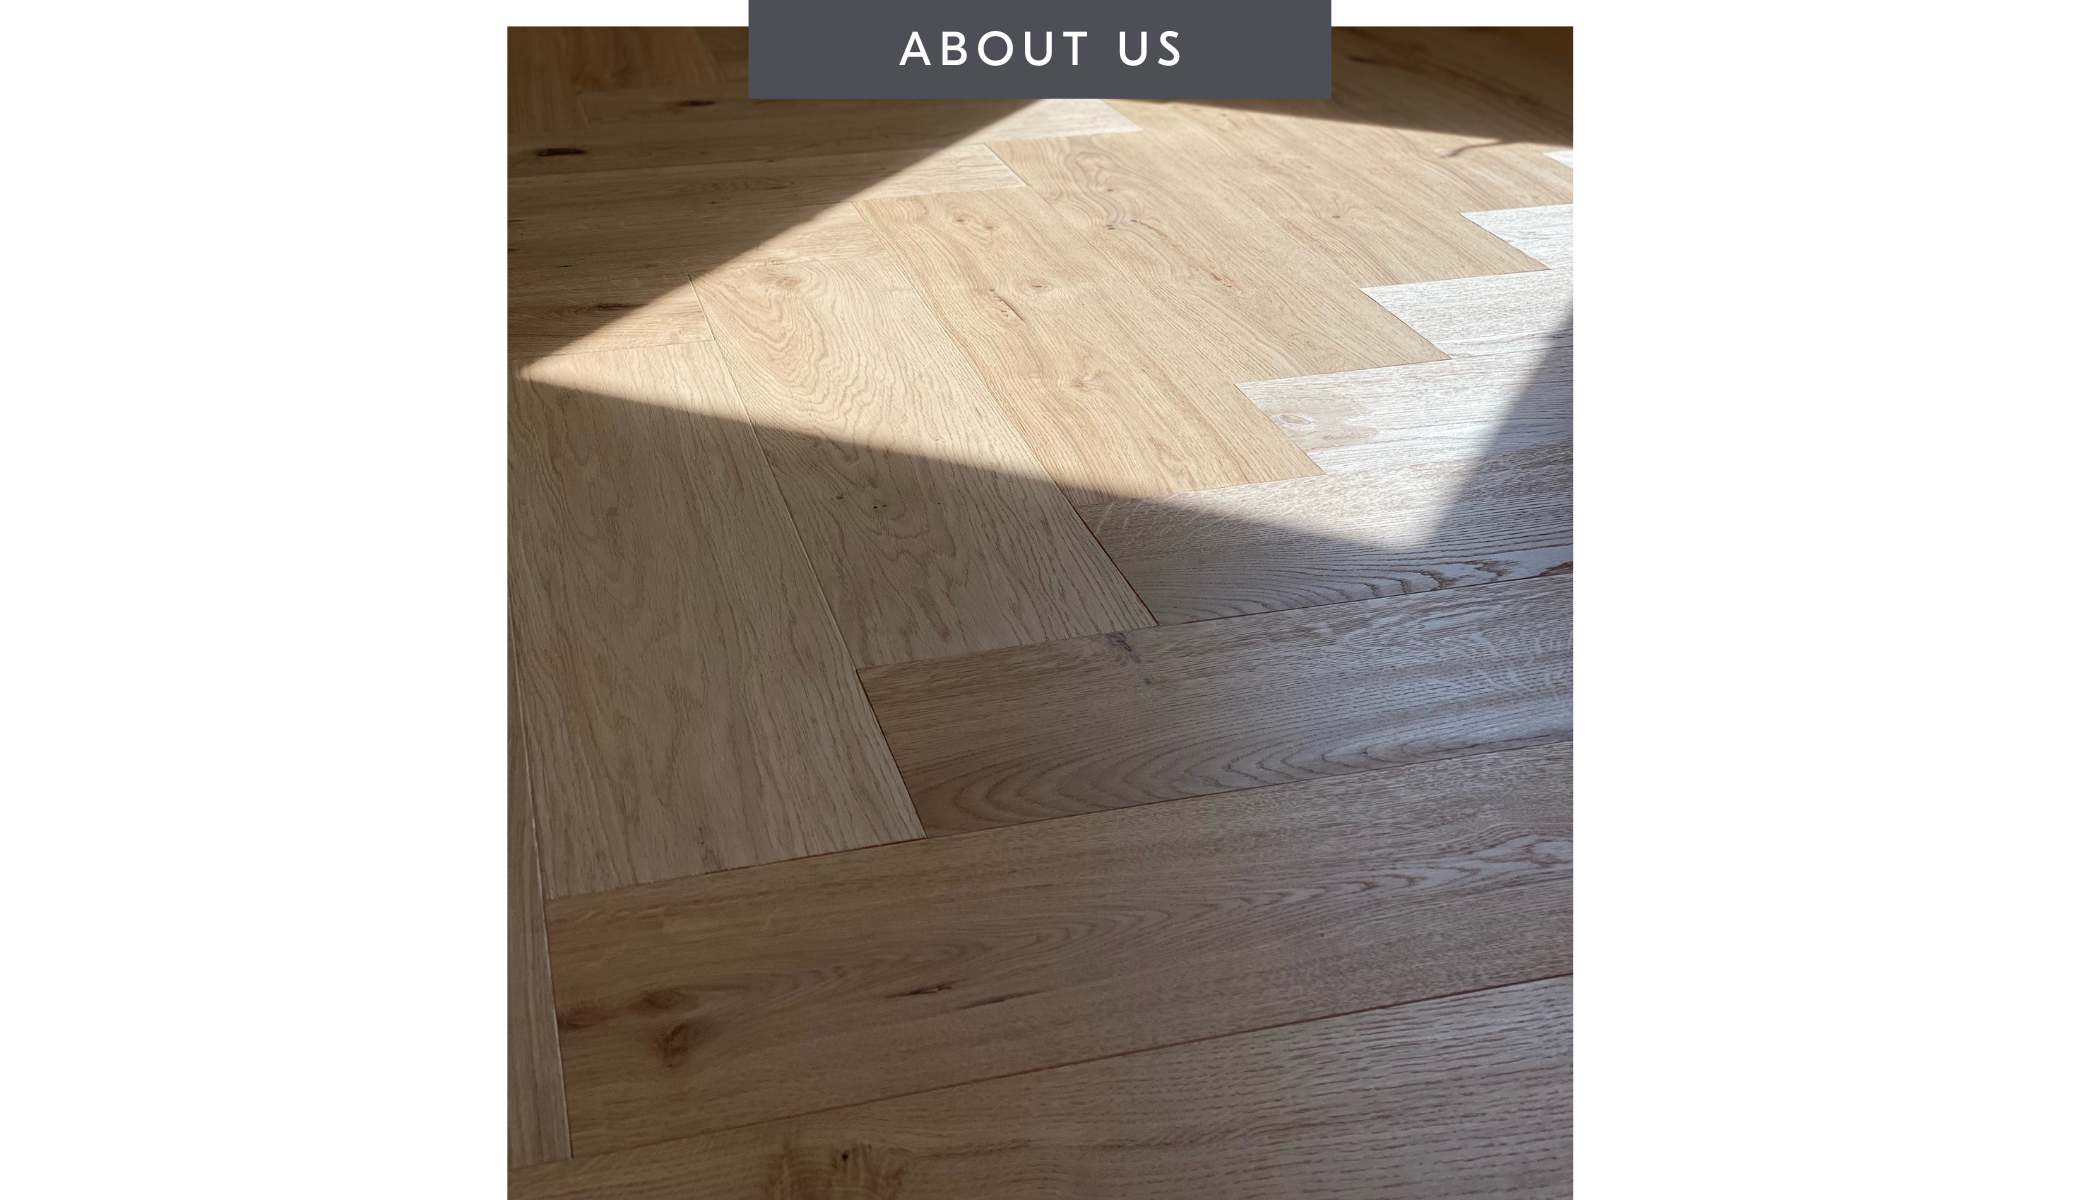 About Us: Stuga herringbone wood floors in a bedroom